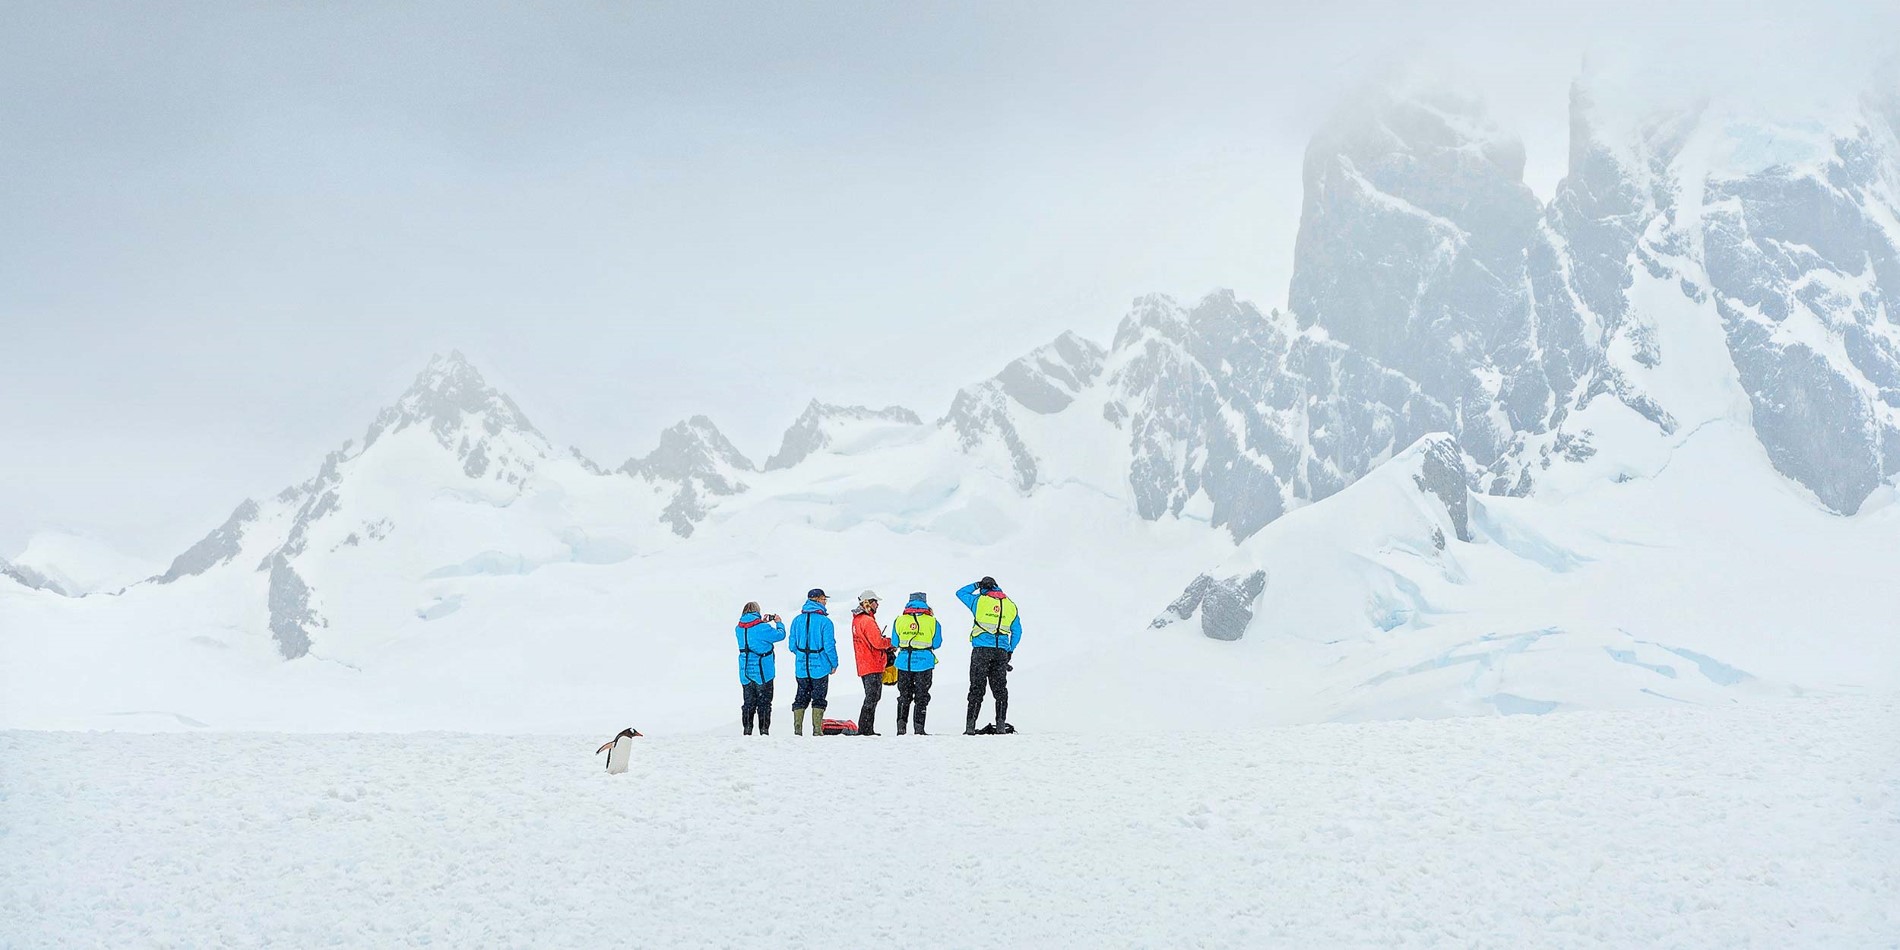 En grupp människor åker skidor nedför ett snötäckt berg